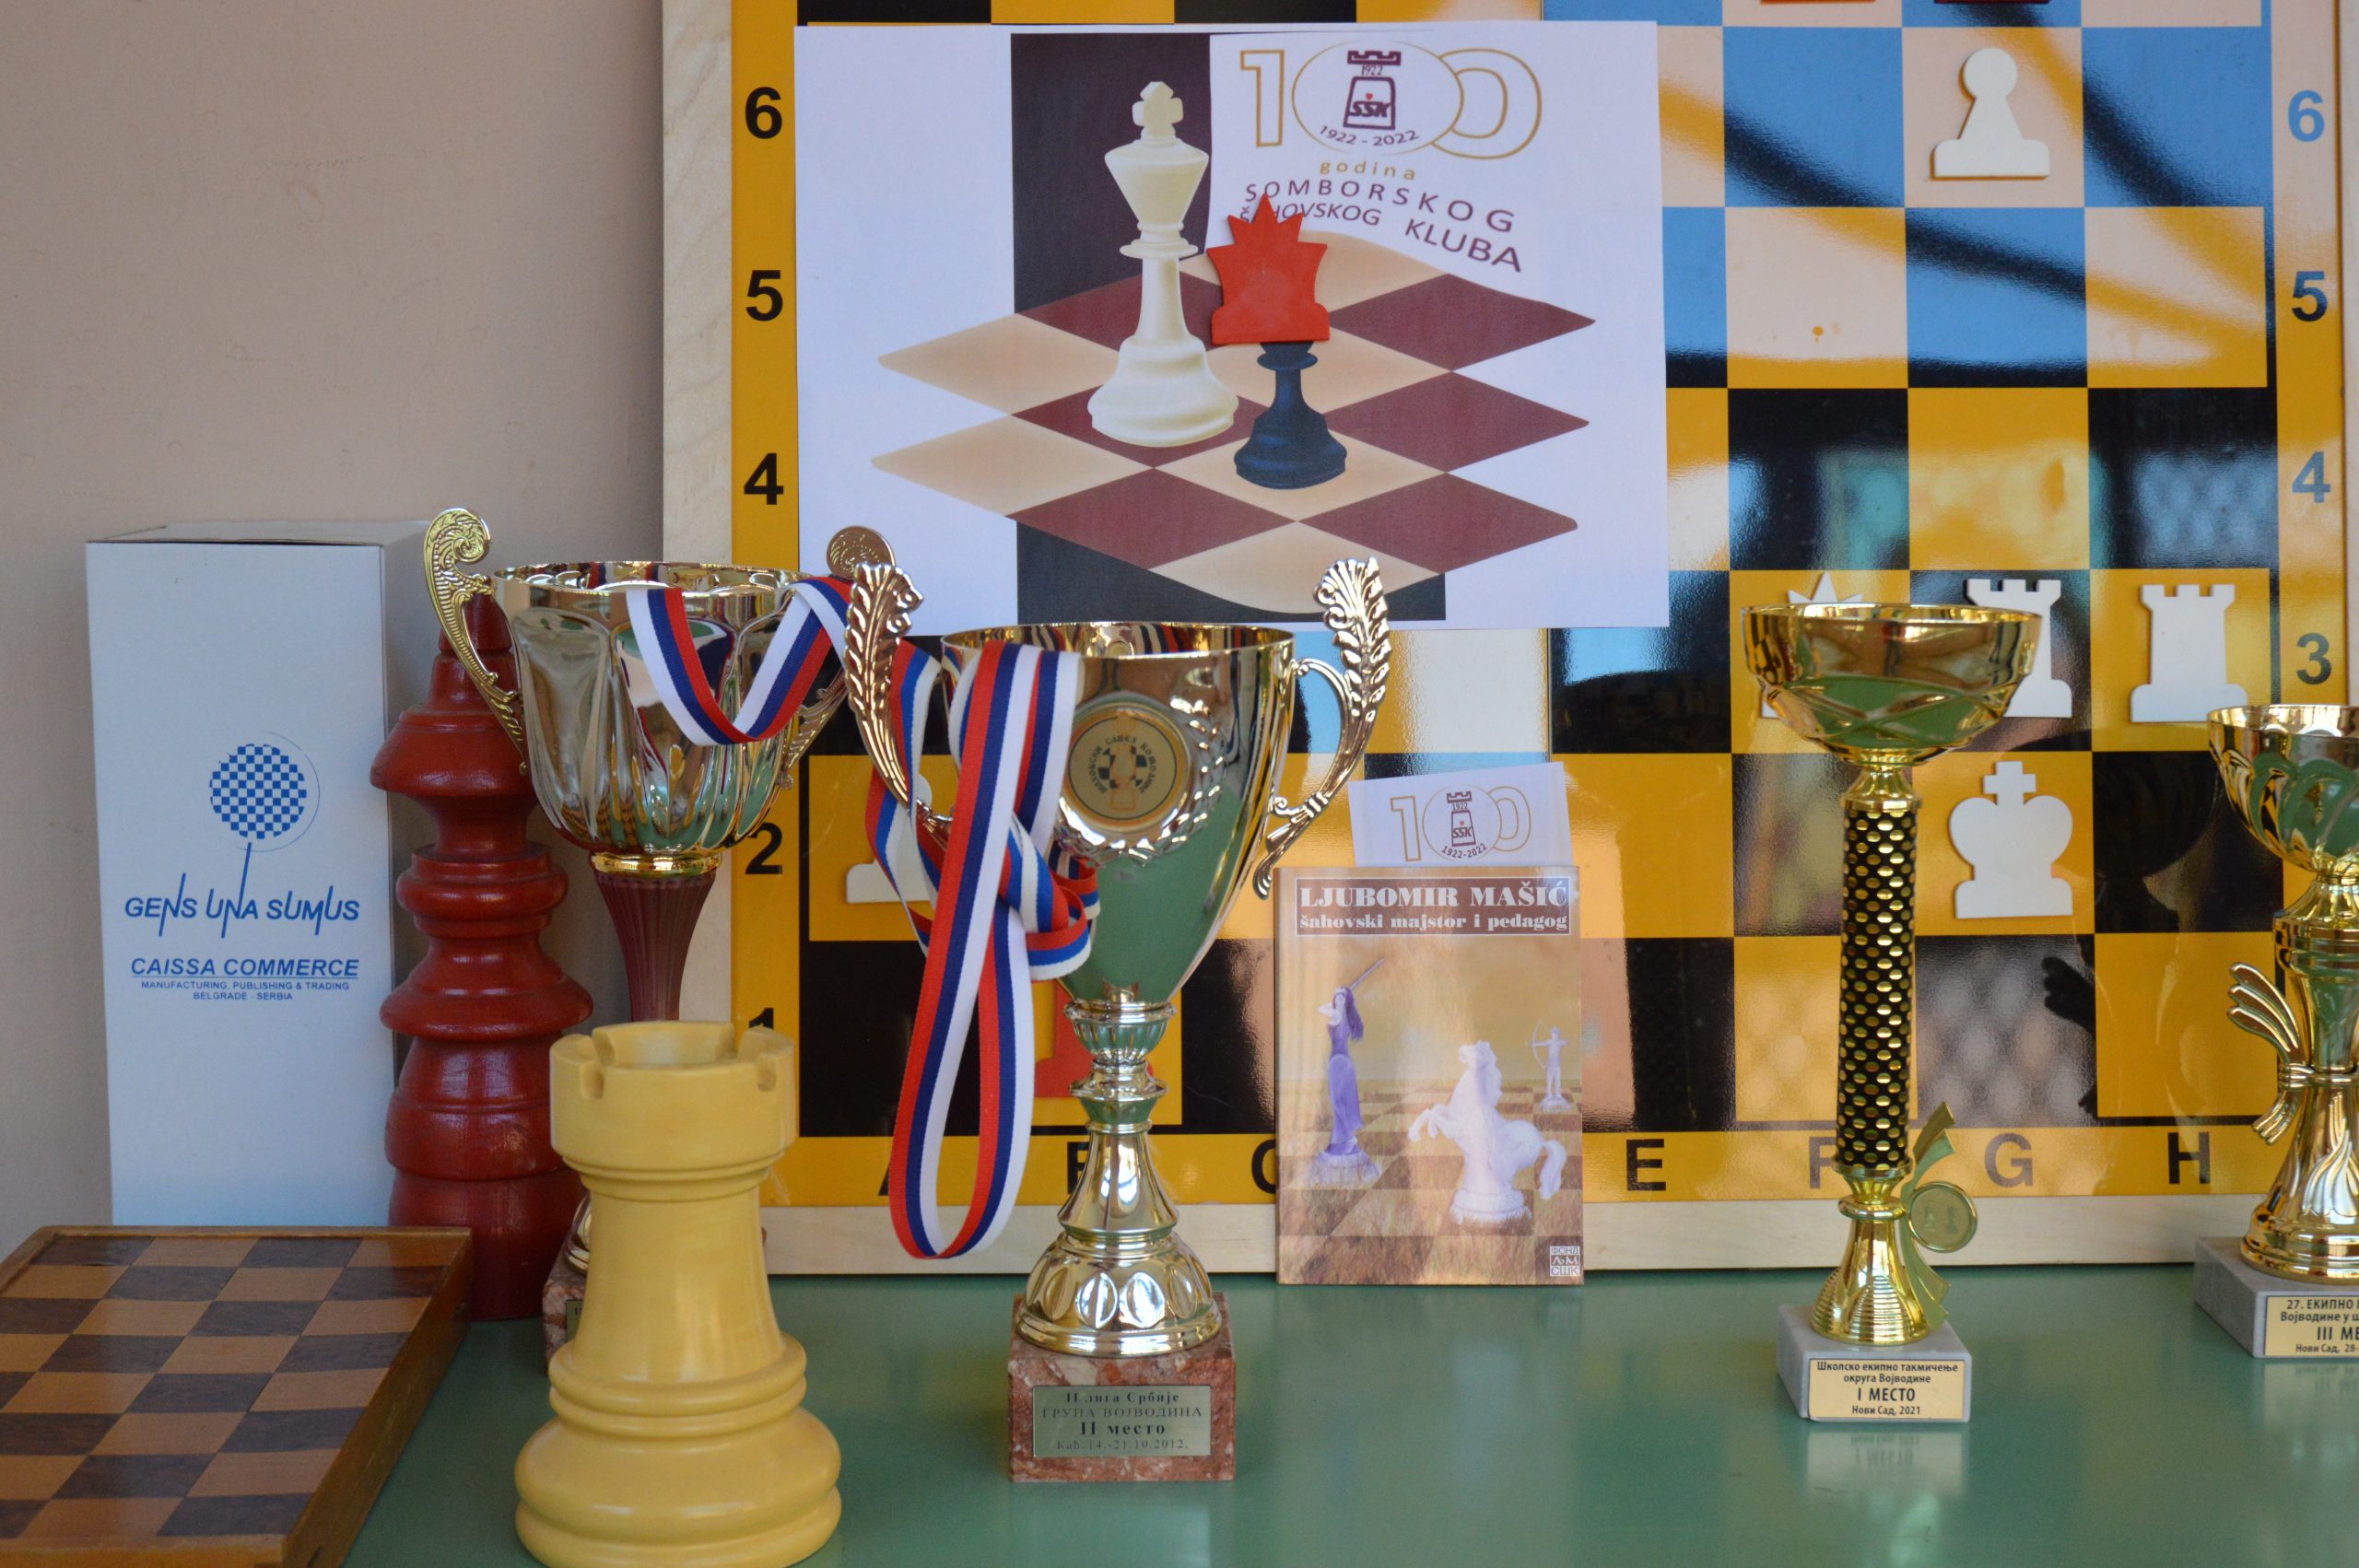 šahovski klub obeležio 100 godina postojanja